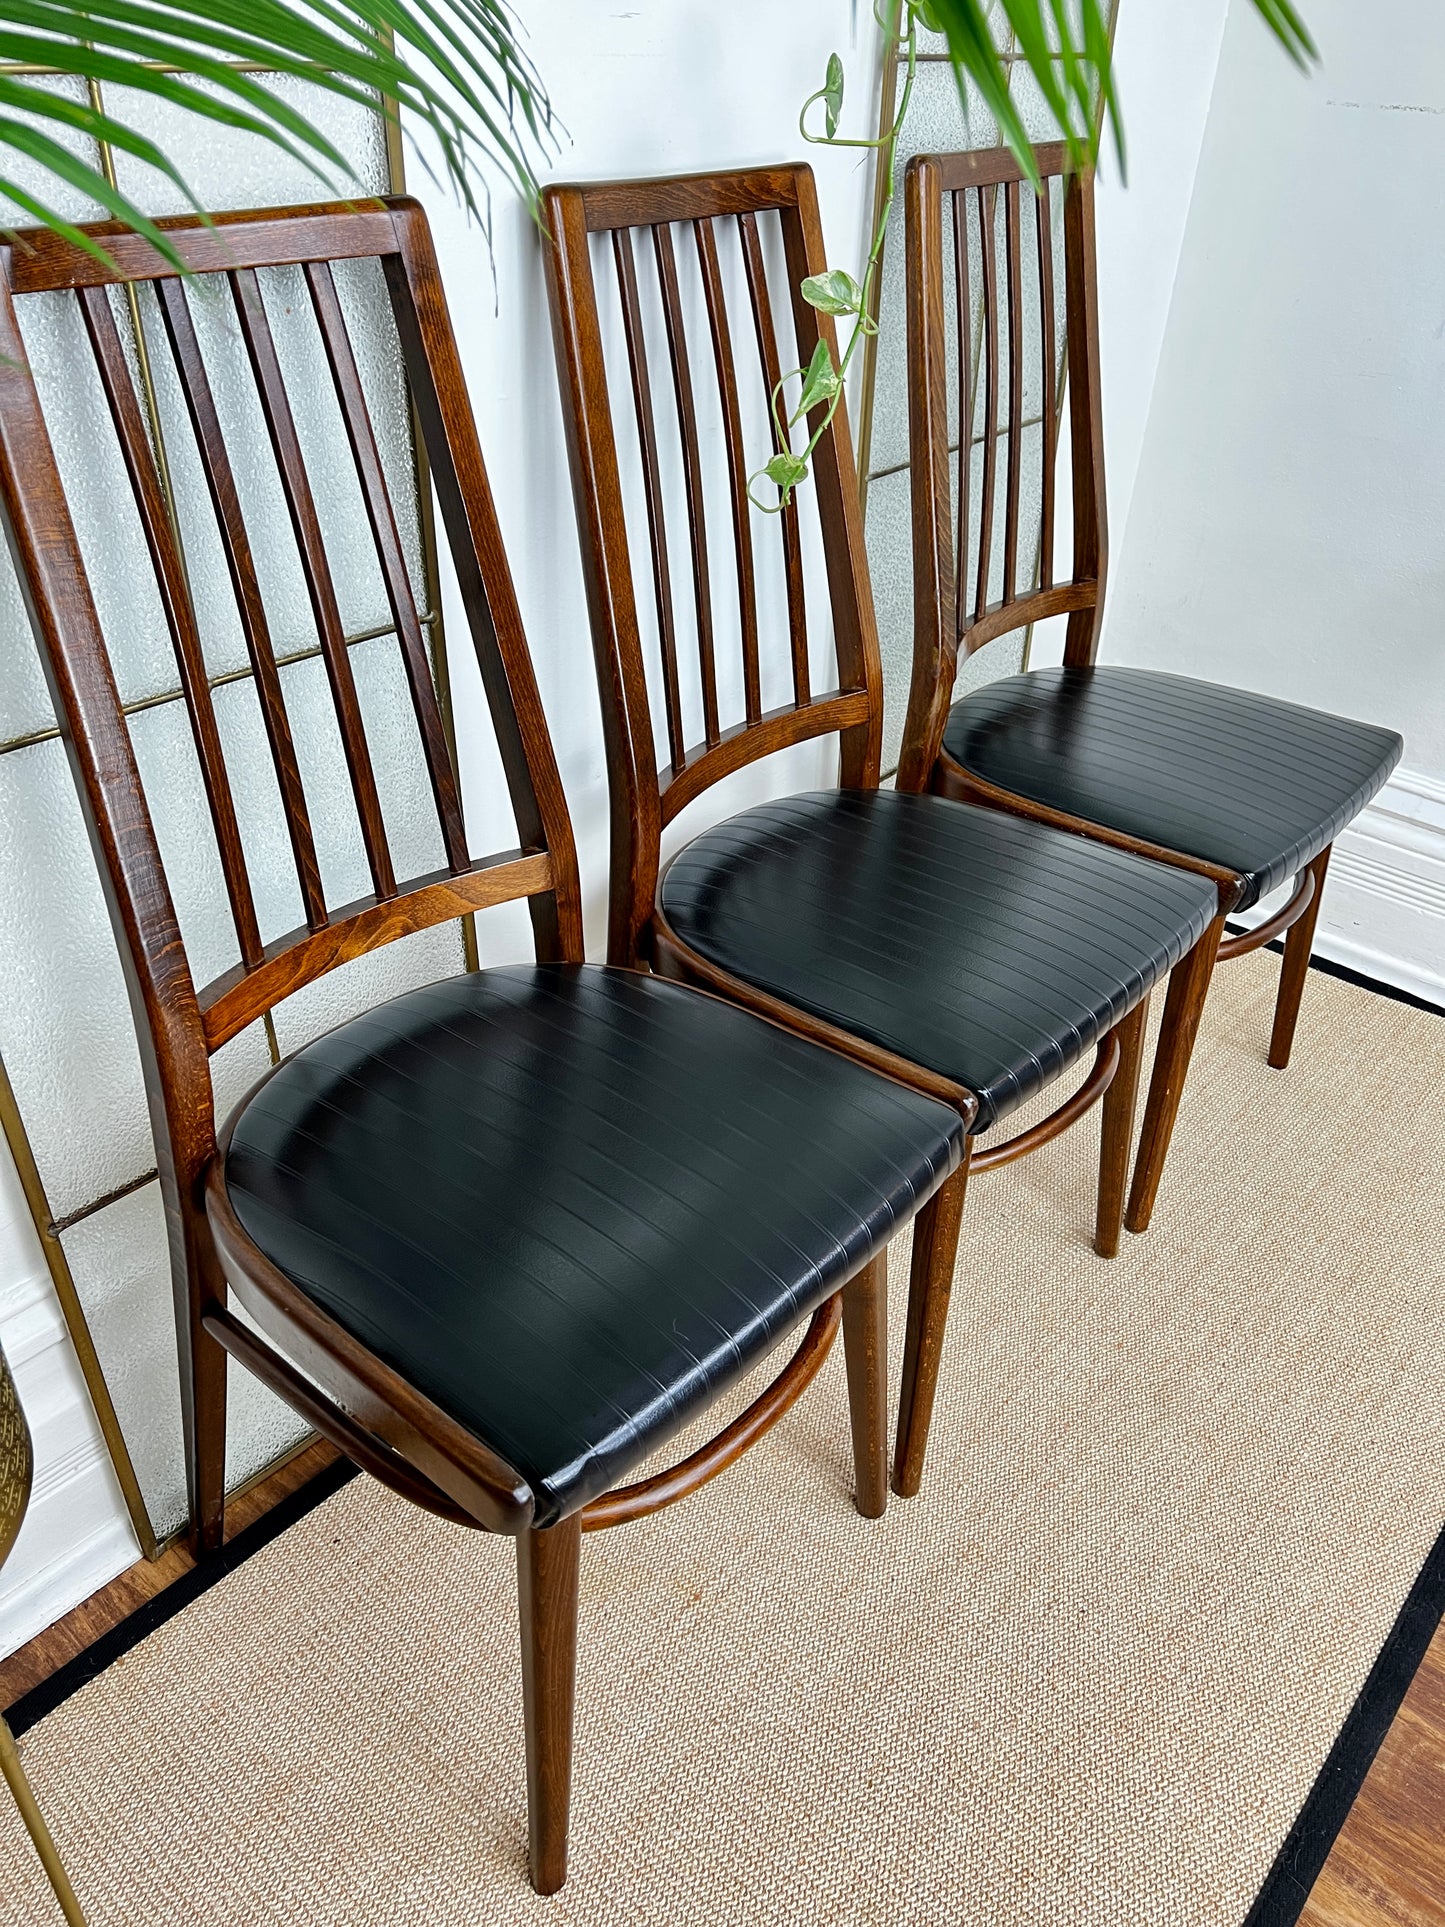 The Rakovnik Chairs